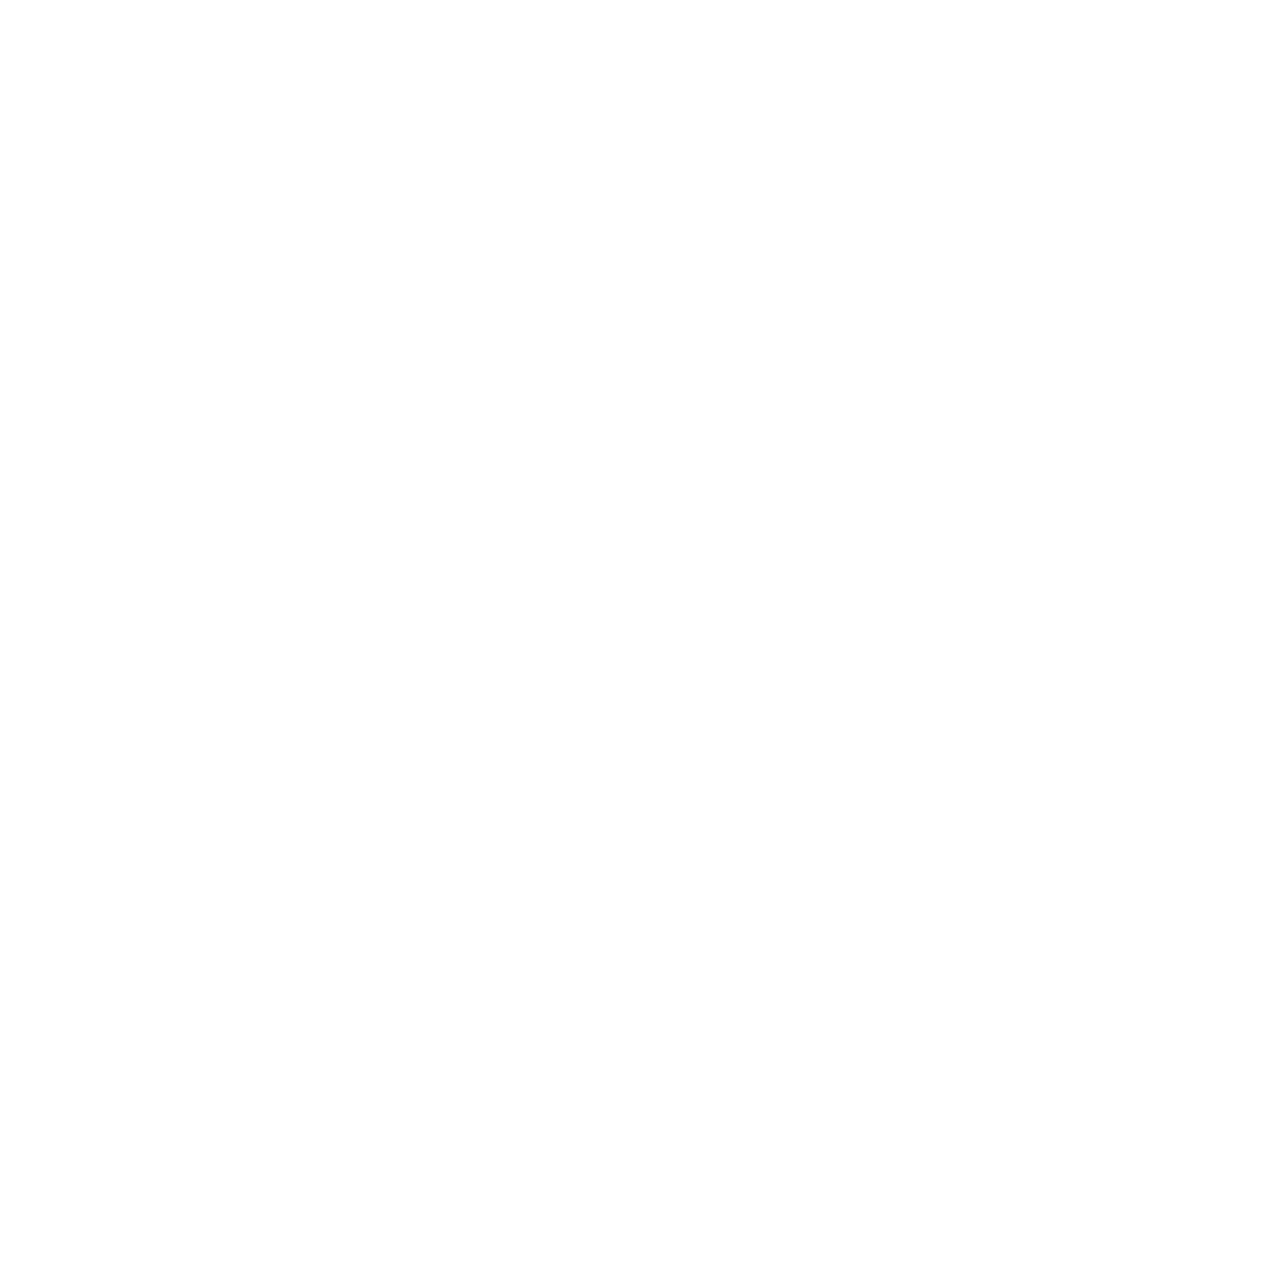 Чистокровный жеребец-производитель Адаир Шаэль, ахалтекинец на фото, Машкова Елена, Elena Mashkova, фотограф